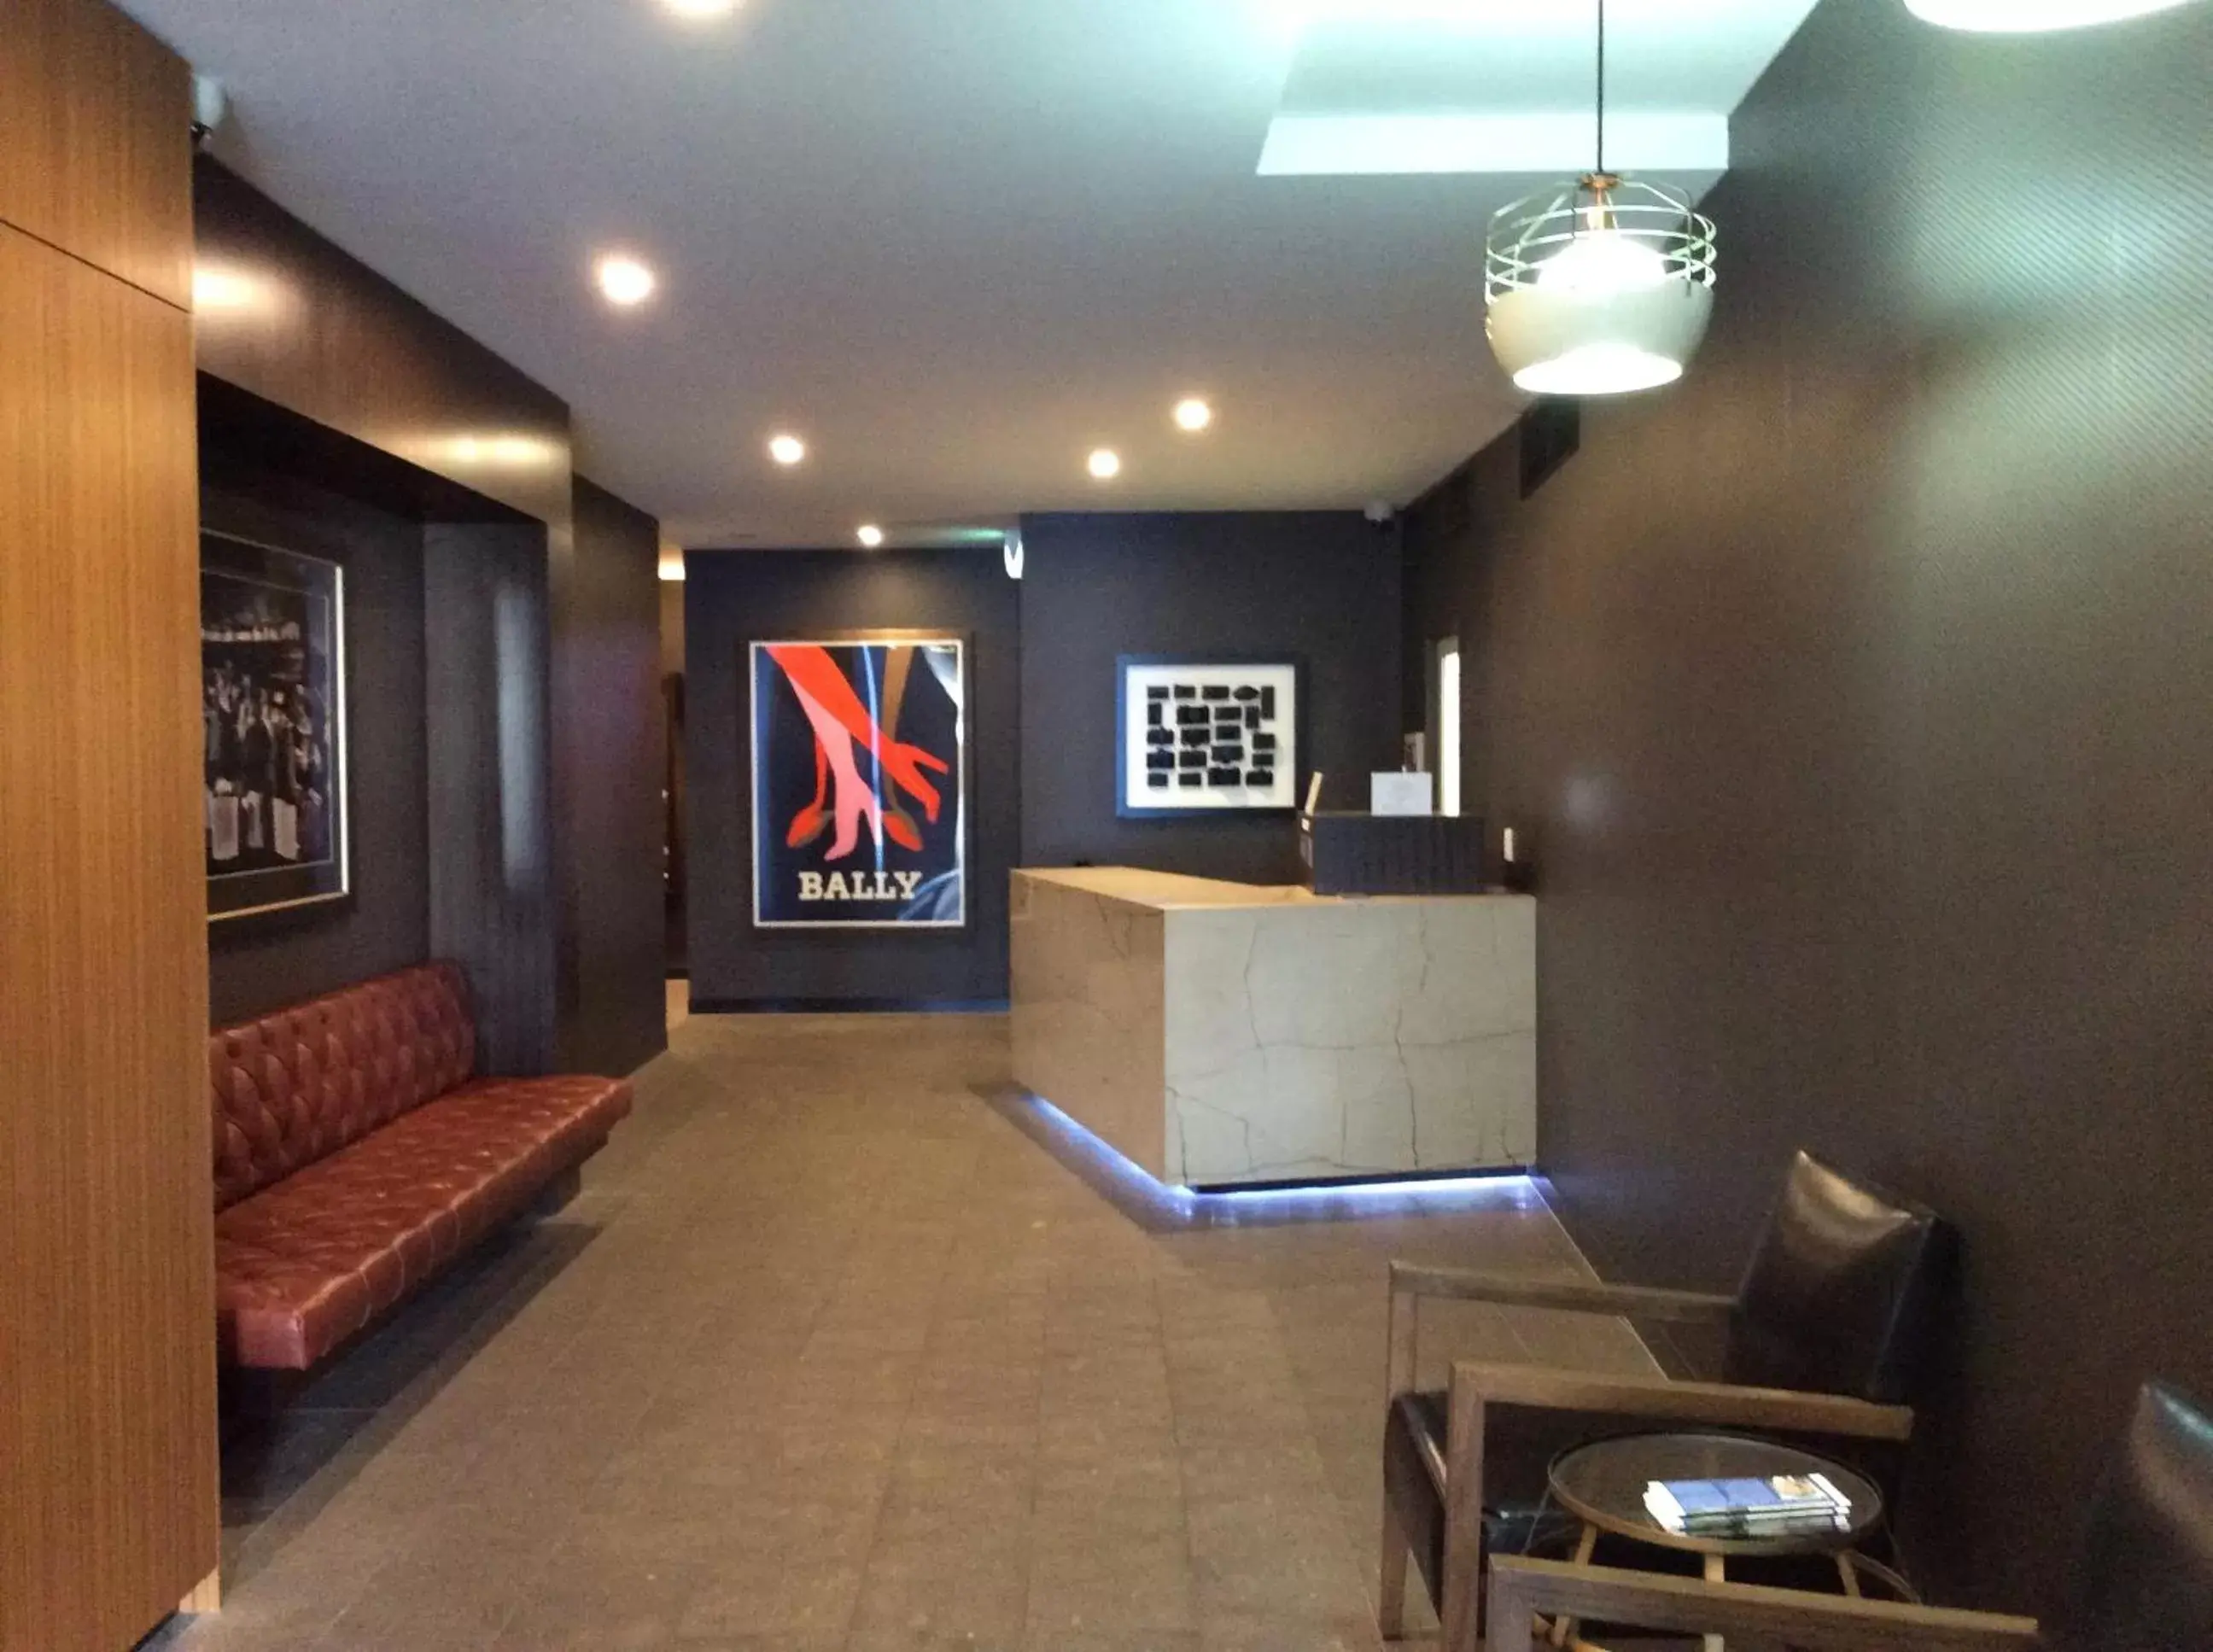 Lobby or reception, Lobby/Reception in Morgan Suites